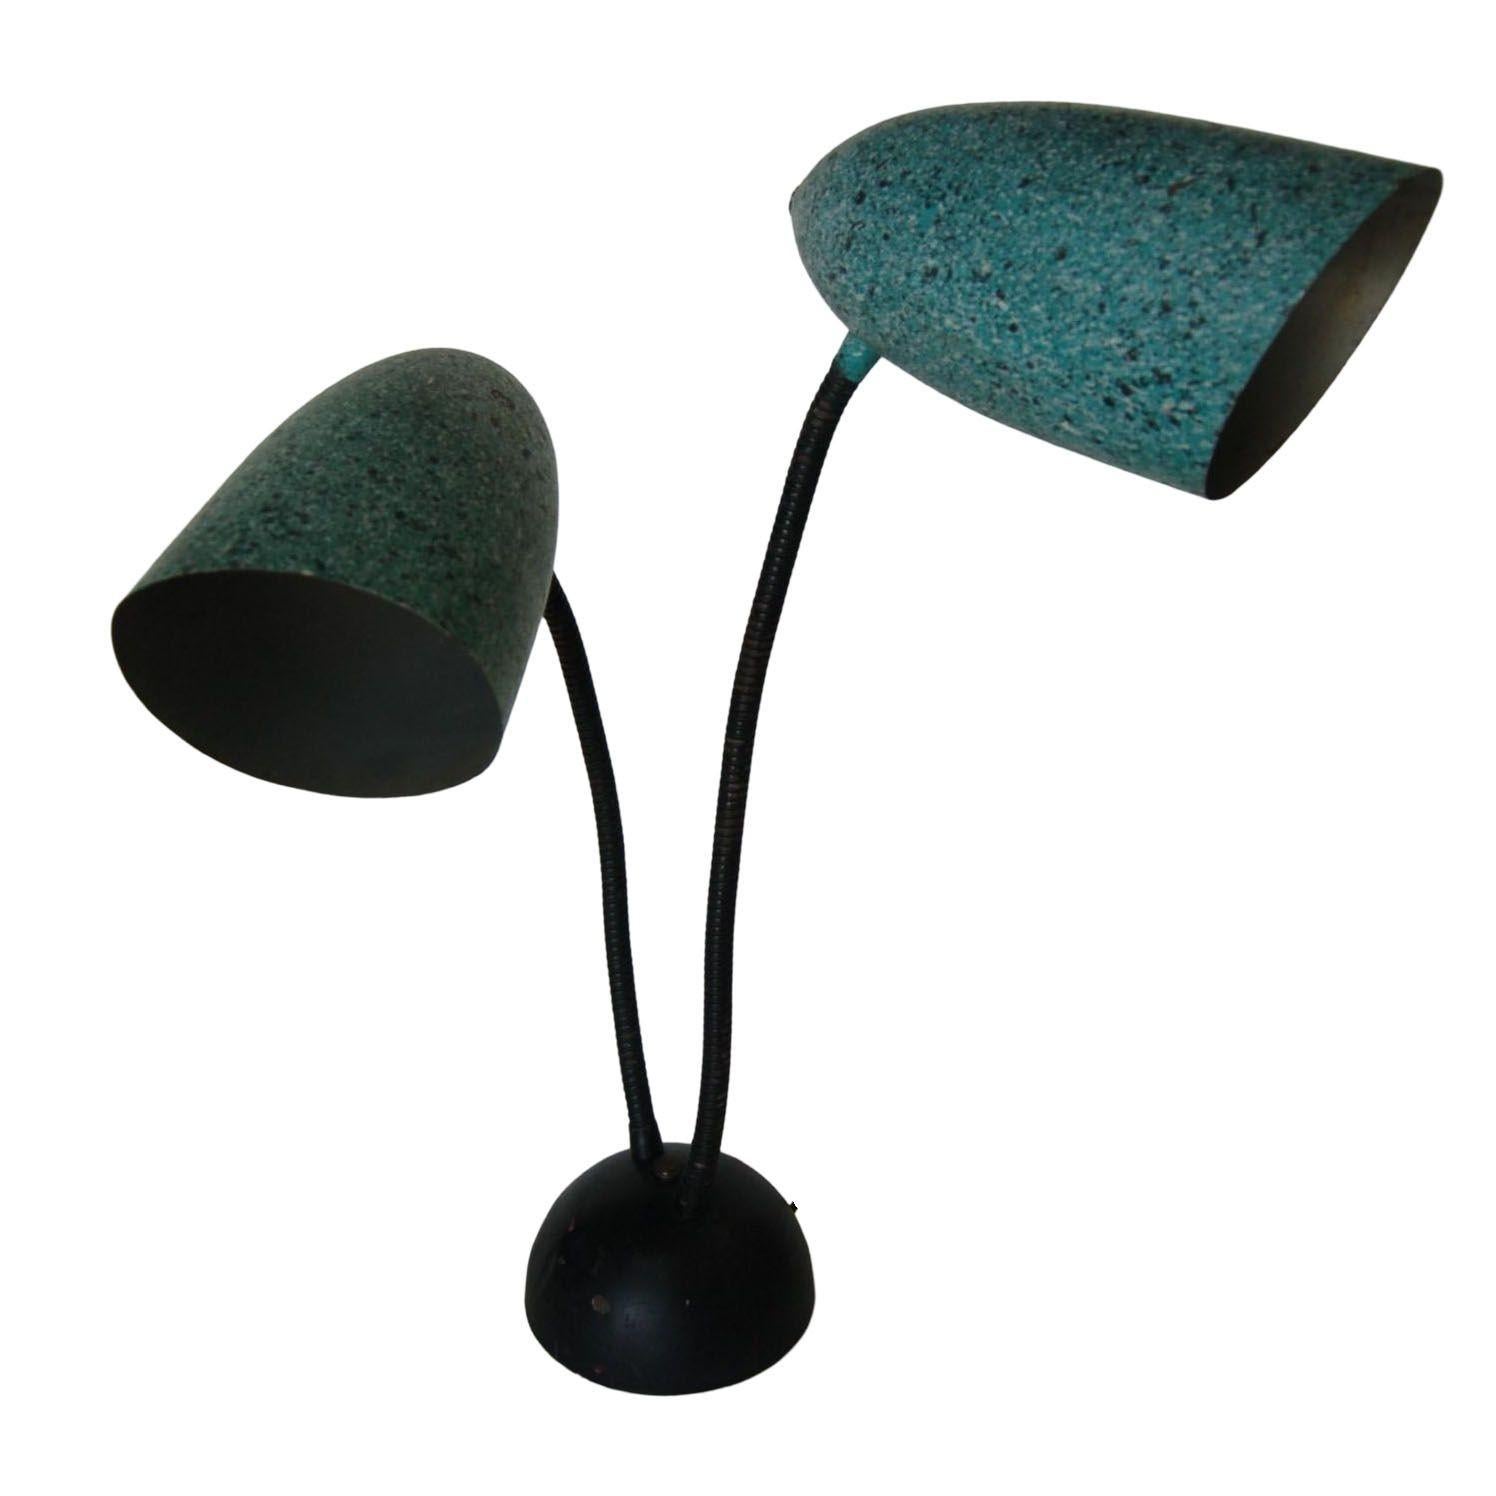 Schreibtisch-Tischlampe mit doppeltem Schwalbenhalsausschnitt, modernistischer grüner Speckle